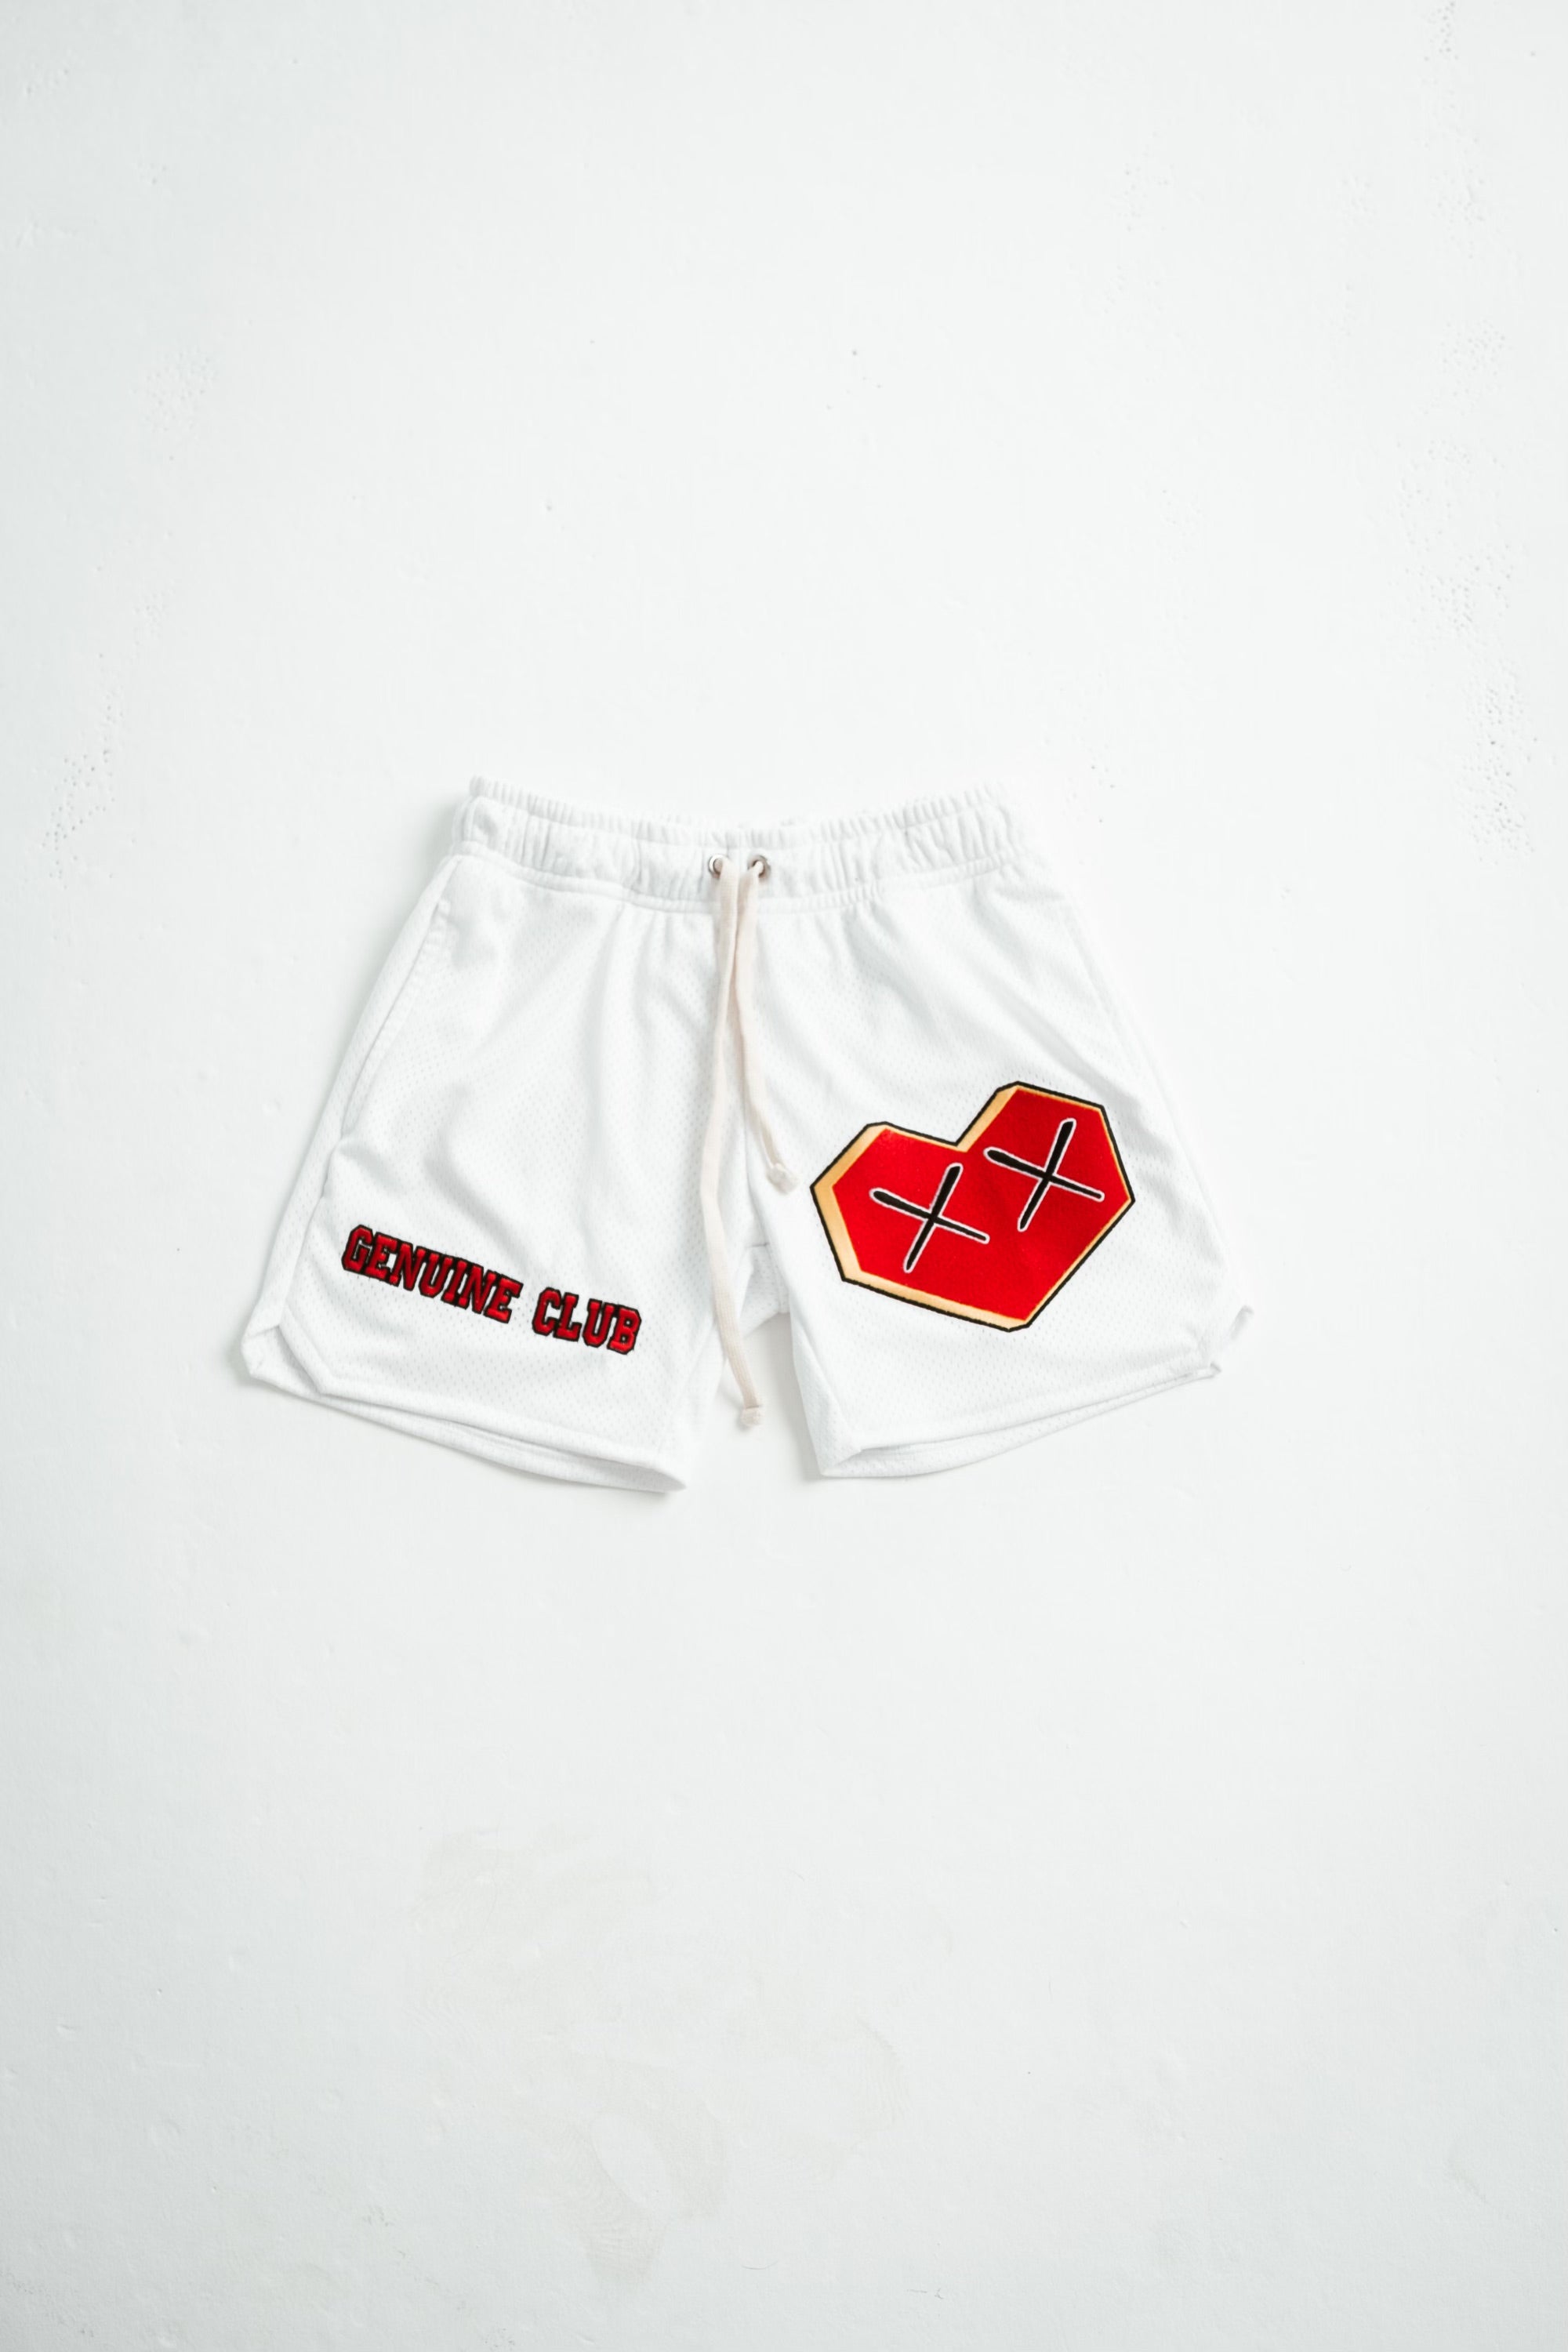 Empowa Clothing - The Camile Shorts set 👌🏼 use code NEWIN10